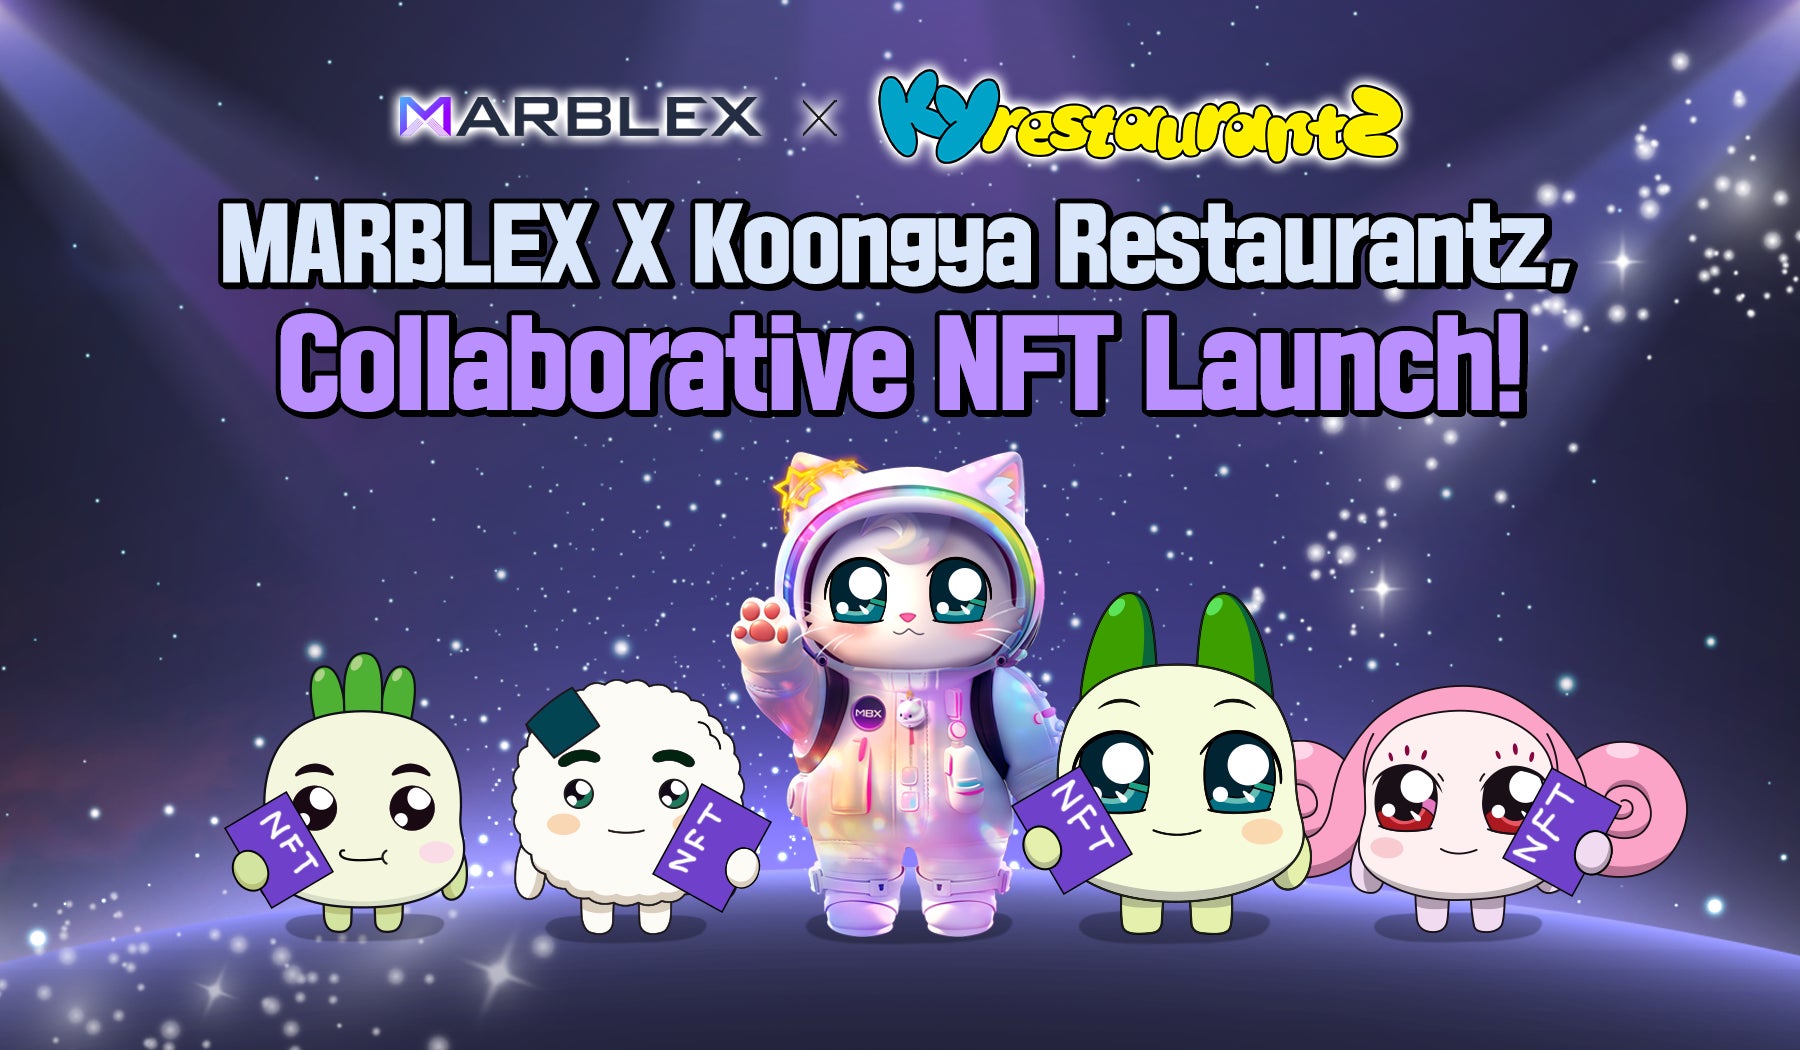 ネットマーブルのブロックチェーン専門子会社MARBLEX、MARBLERSHIP NFT新コレクション「KOONGYA NFT」を発表